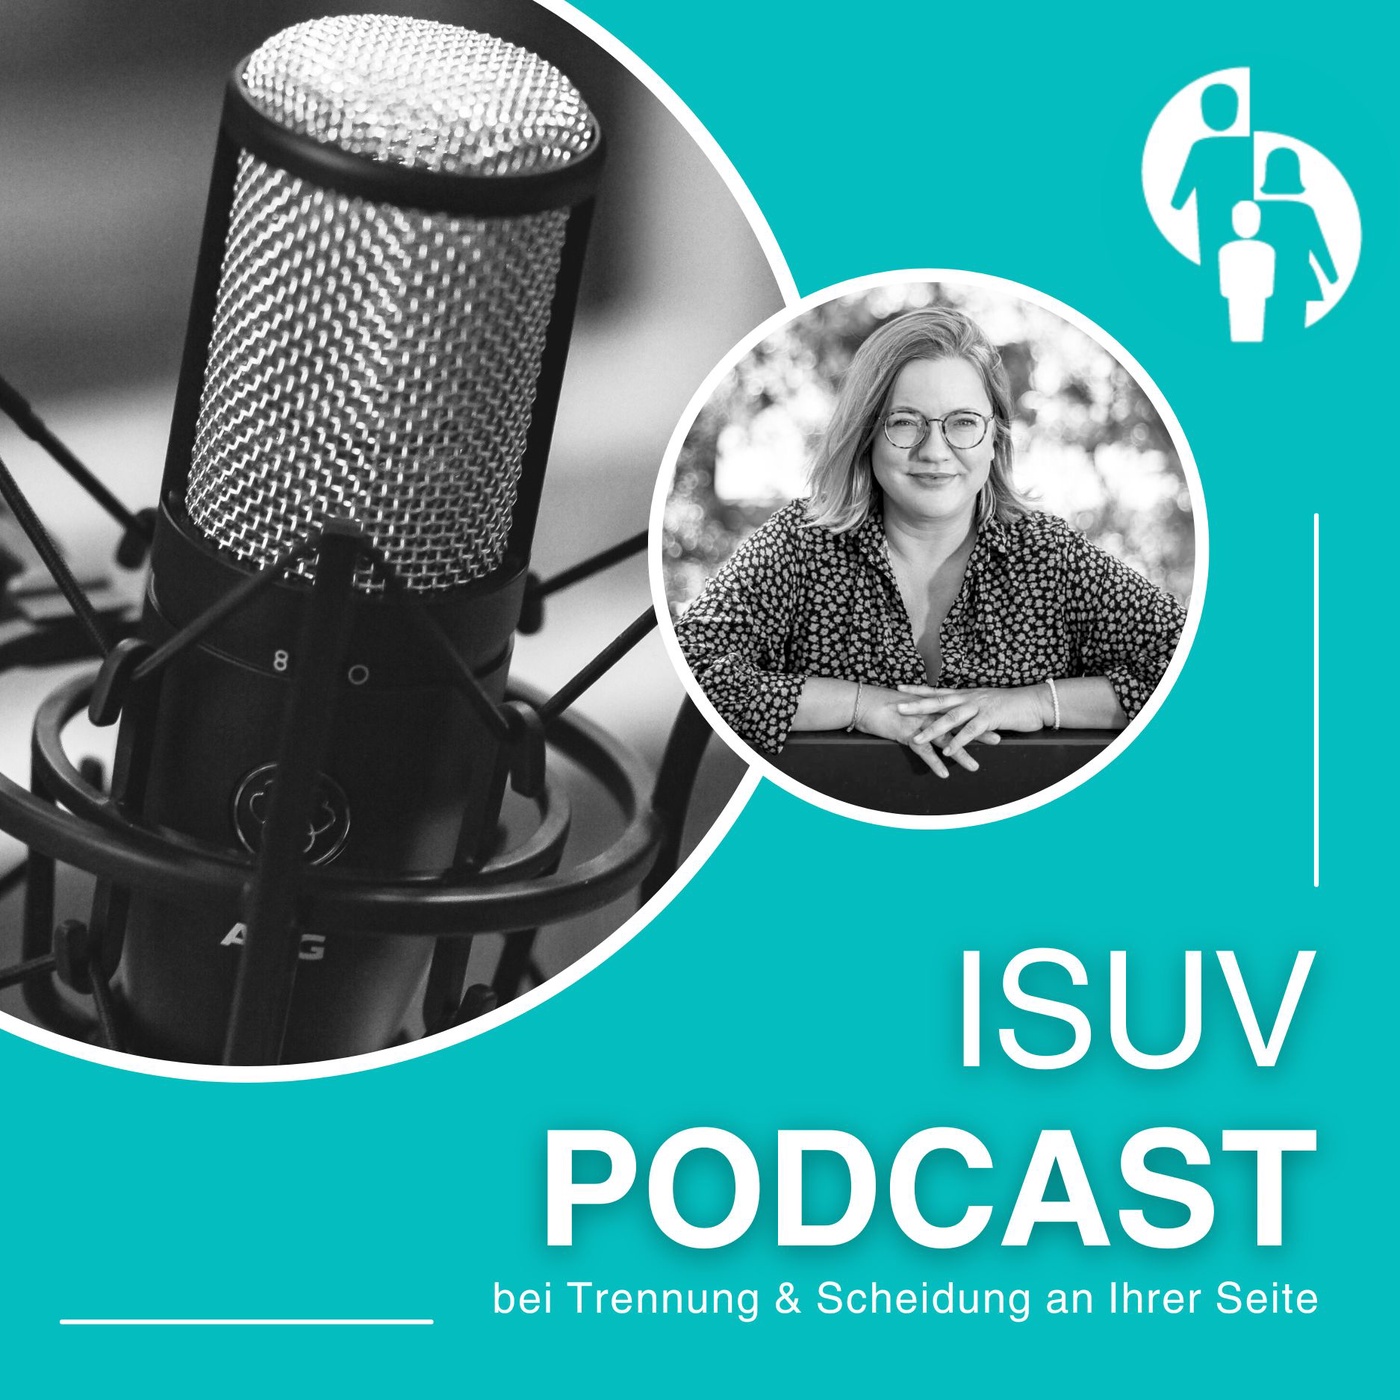 ISUV-Podcast: Folge 2 | Frisch getrennt - was nun? Erste Schritte!